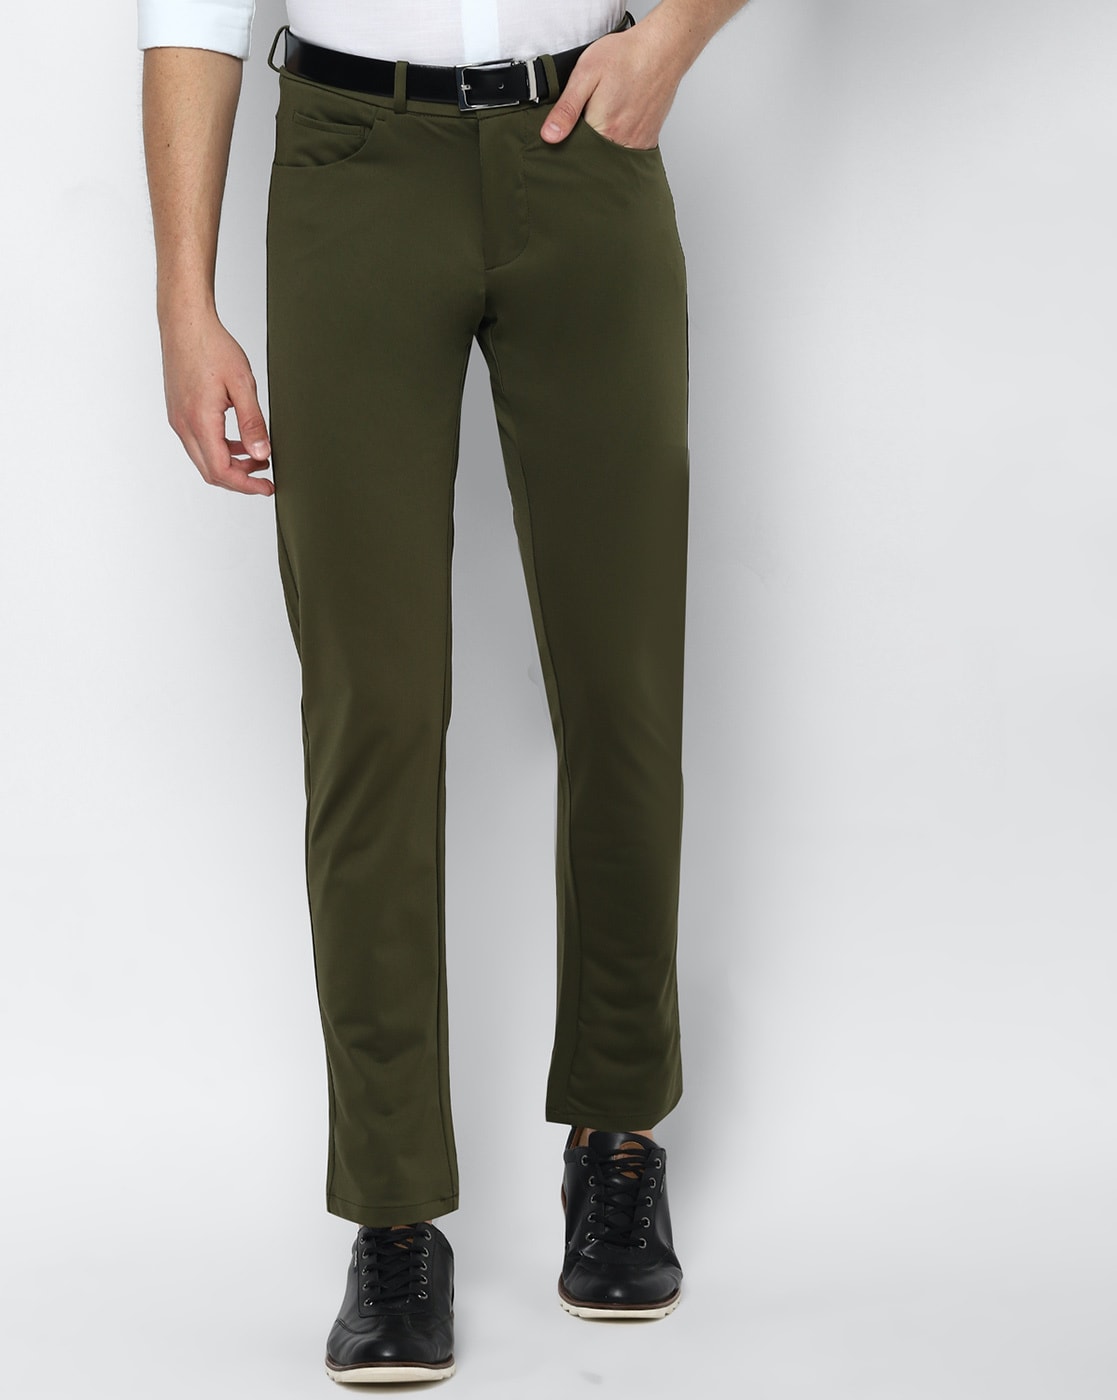 Men's Green Pants, Shorts, Khakis, & Chinos | Dockers® US